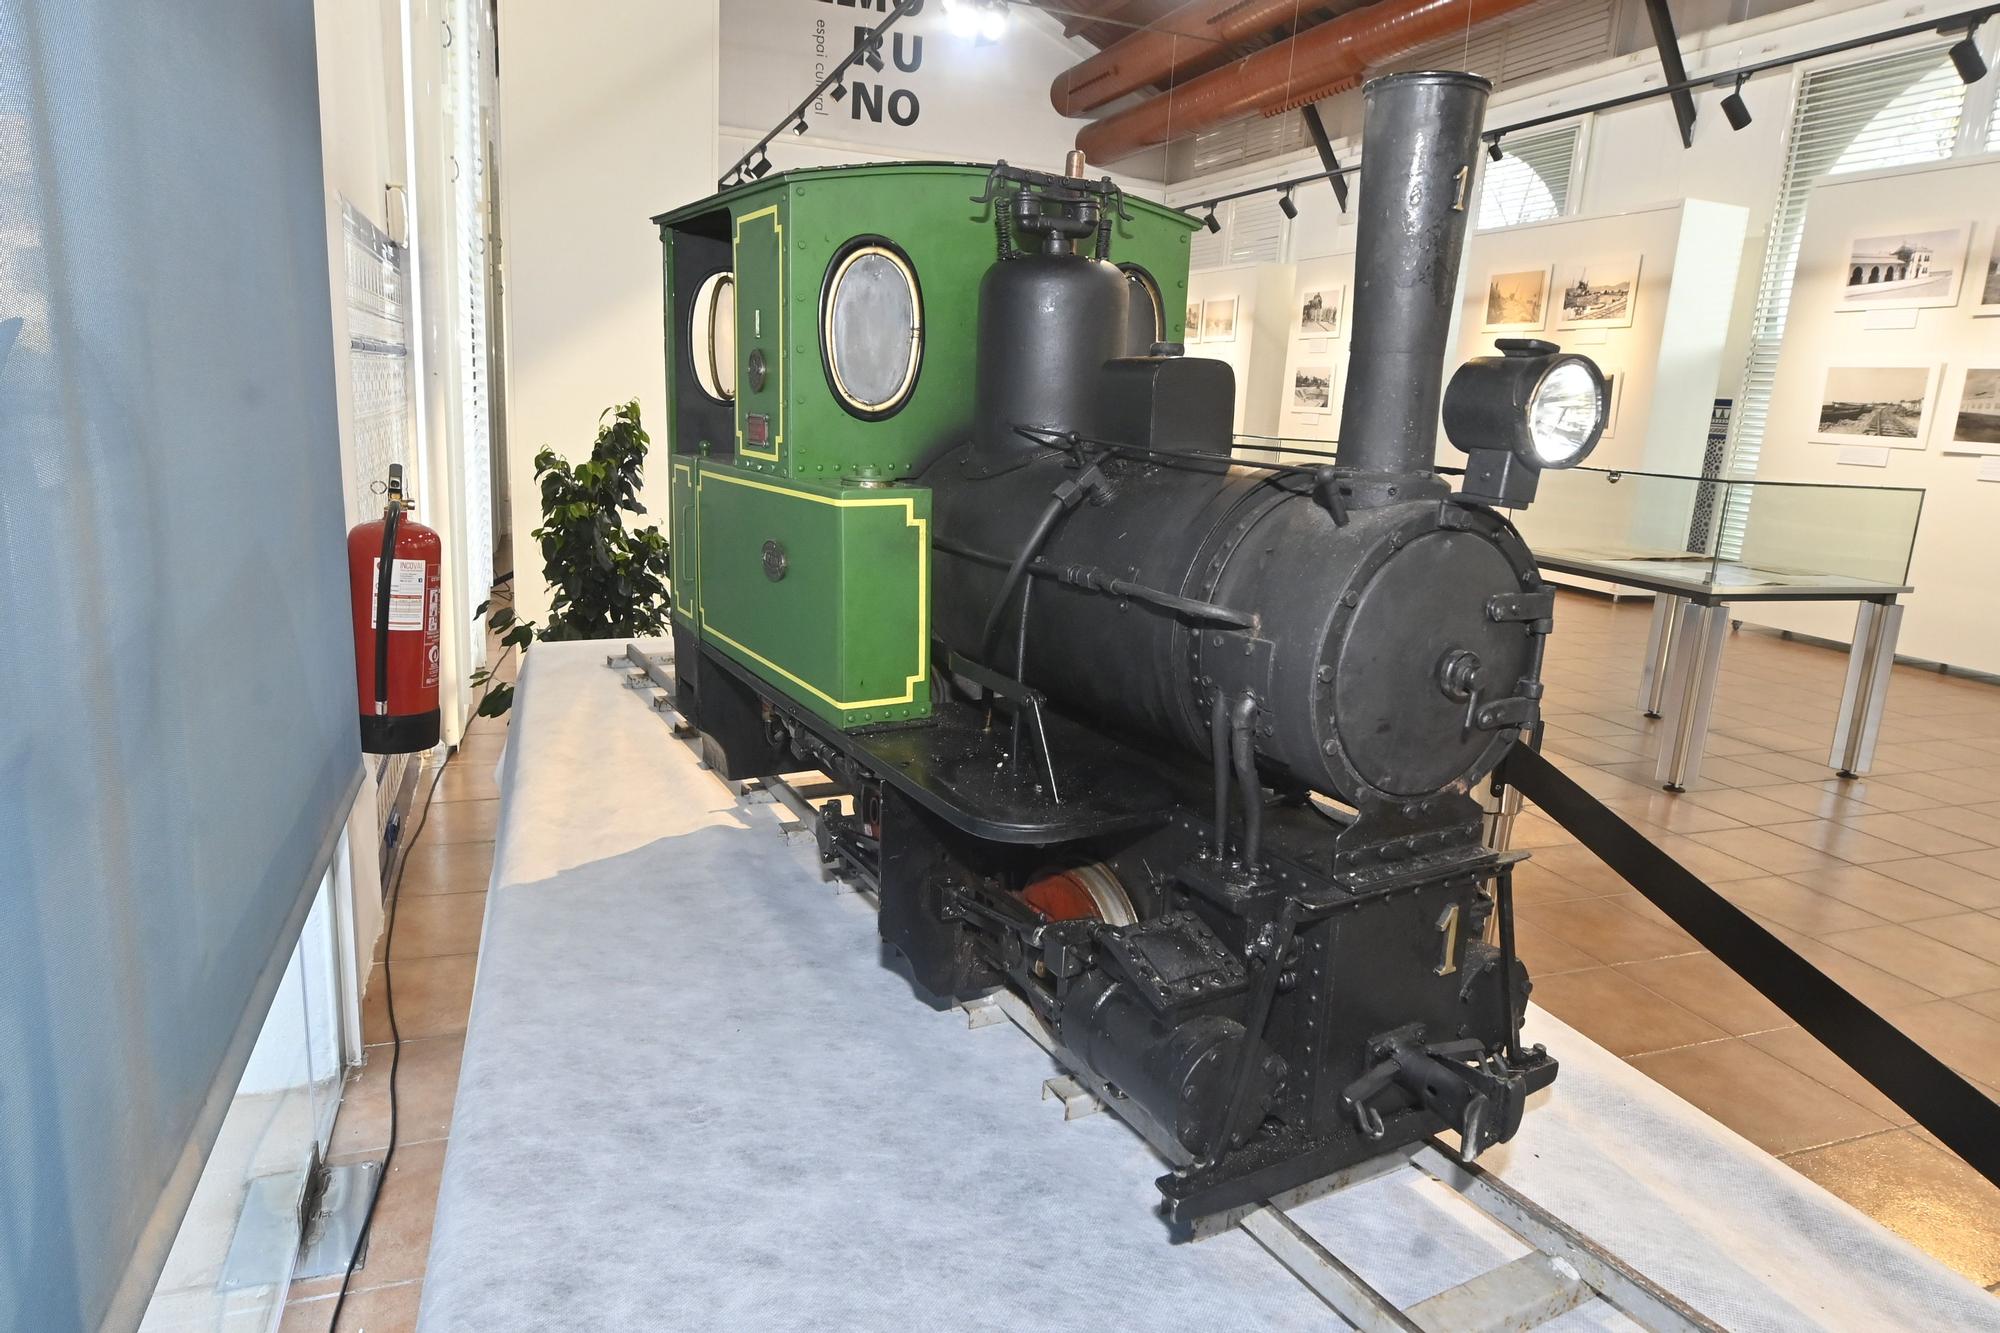 Réplica de la primera locomotora utilizada en La Panderola. Foto: Manolo Nebot.